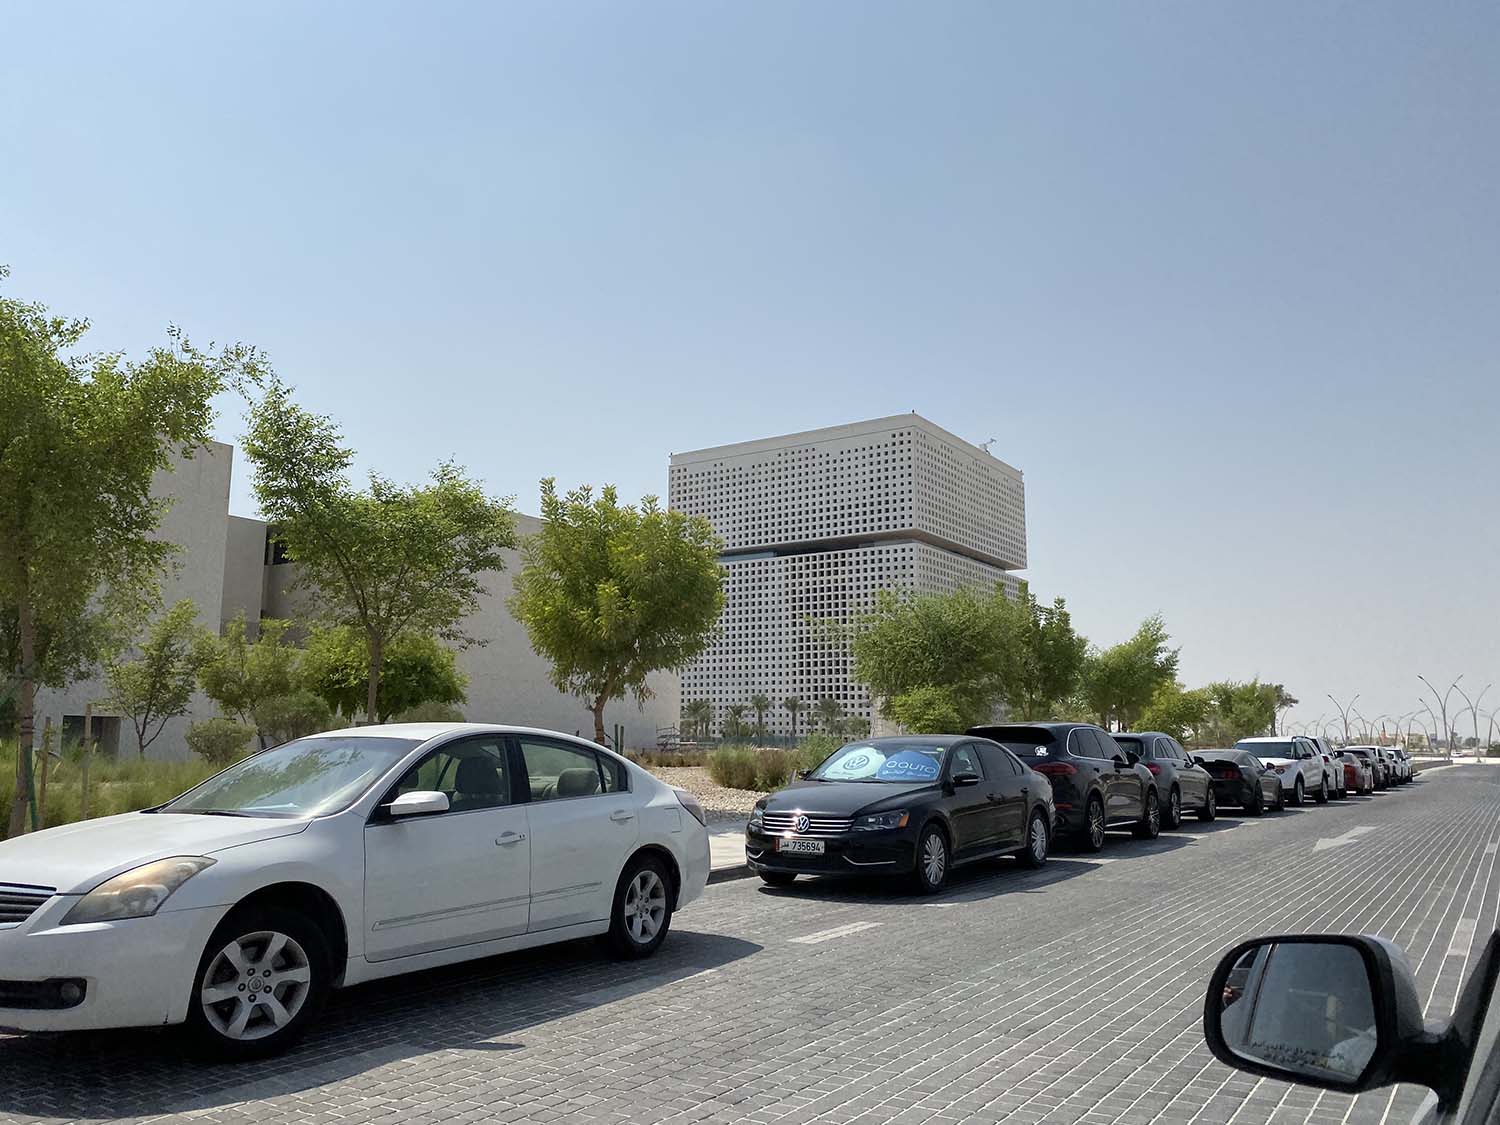 Qatar Foundation Headquarters